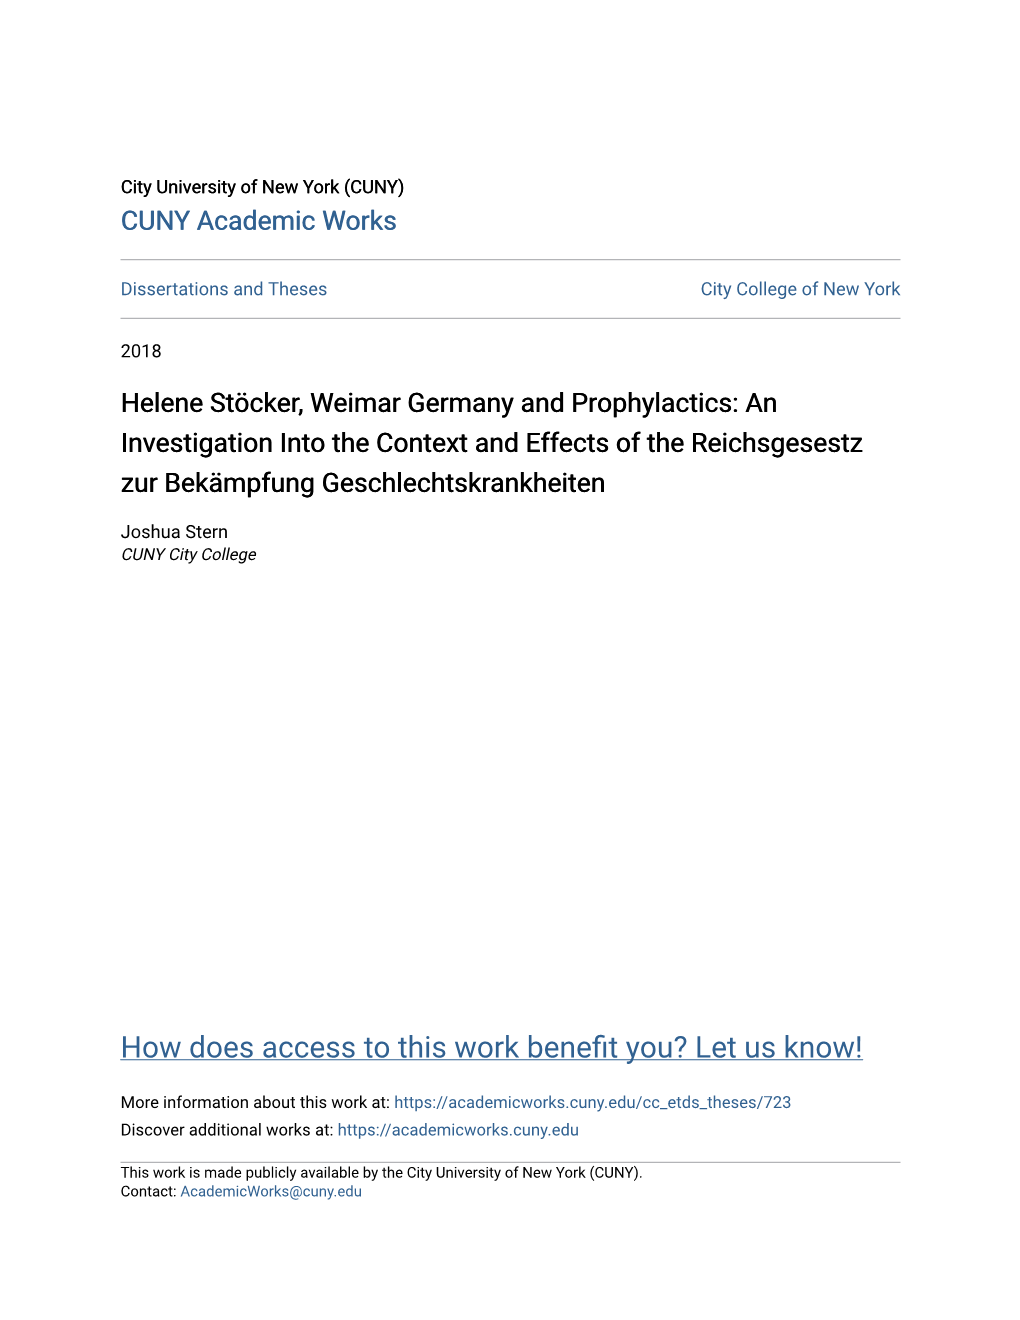 Helene Stöcker, Weimar Germany and Prophylactics: an Investigation Into the Context and Effects of the Reichsgesestz Zur Bekämpfung Geschlechtskrankheiten